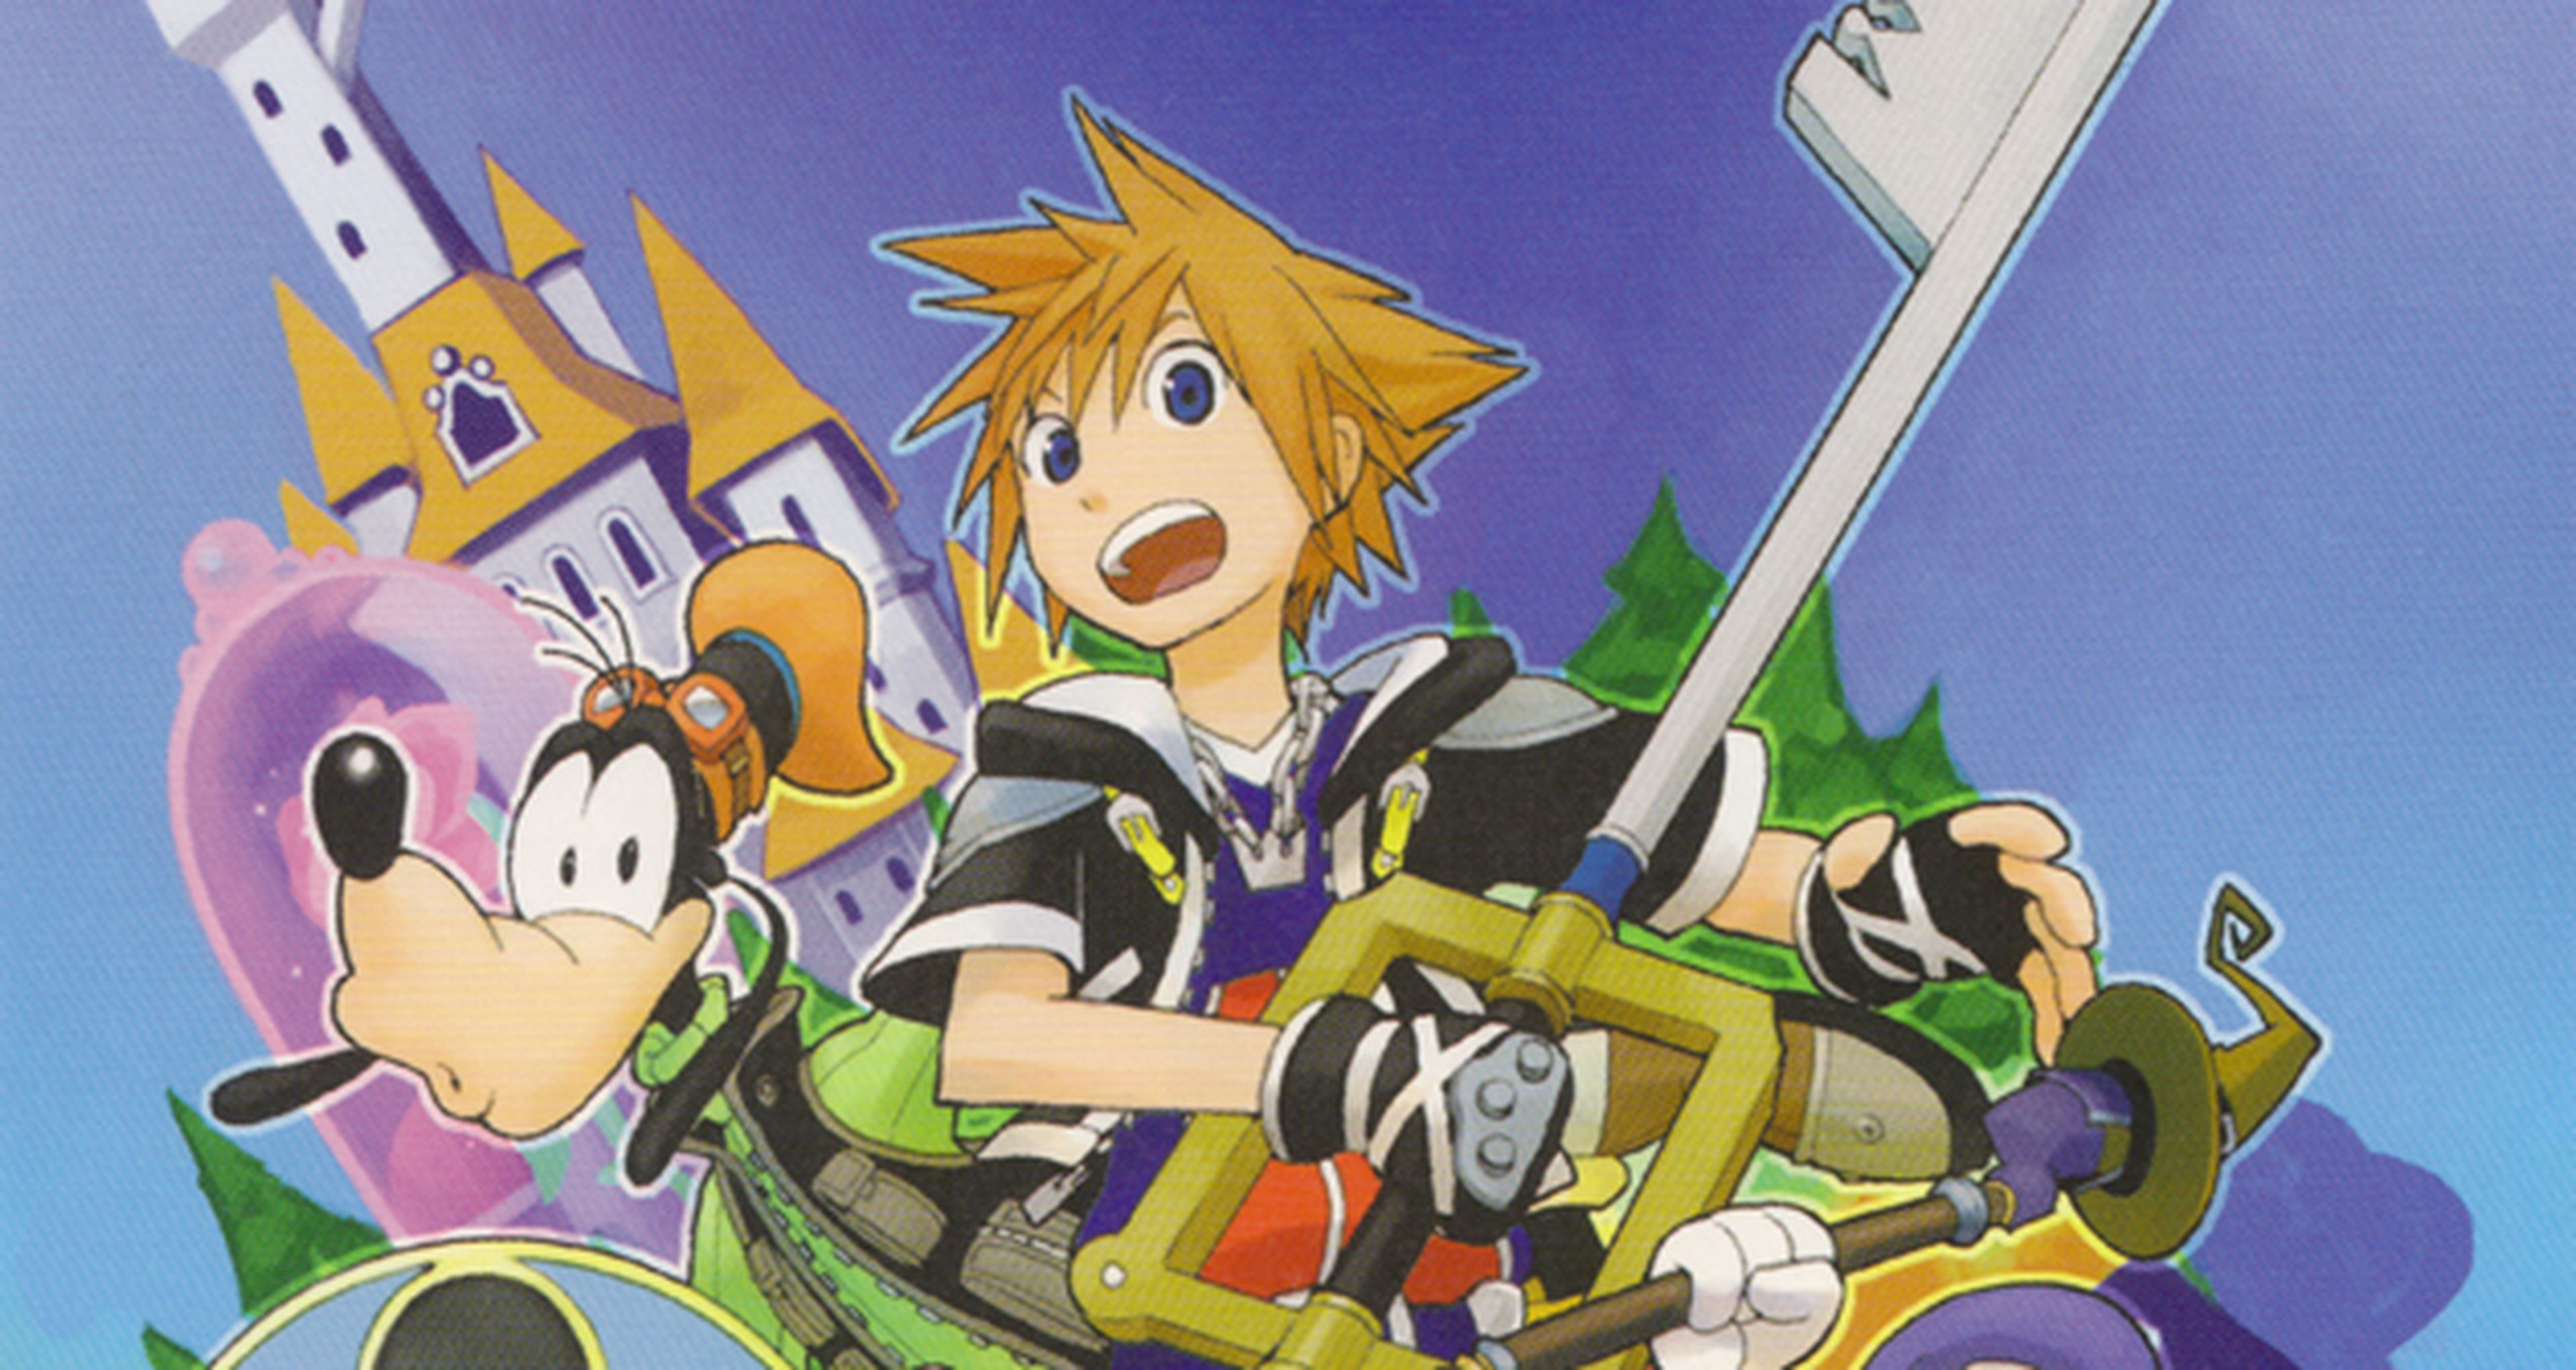 El manga de Kingdom Hearts vuelve a publicarse